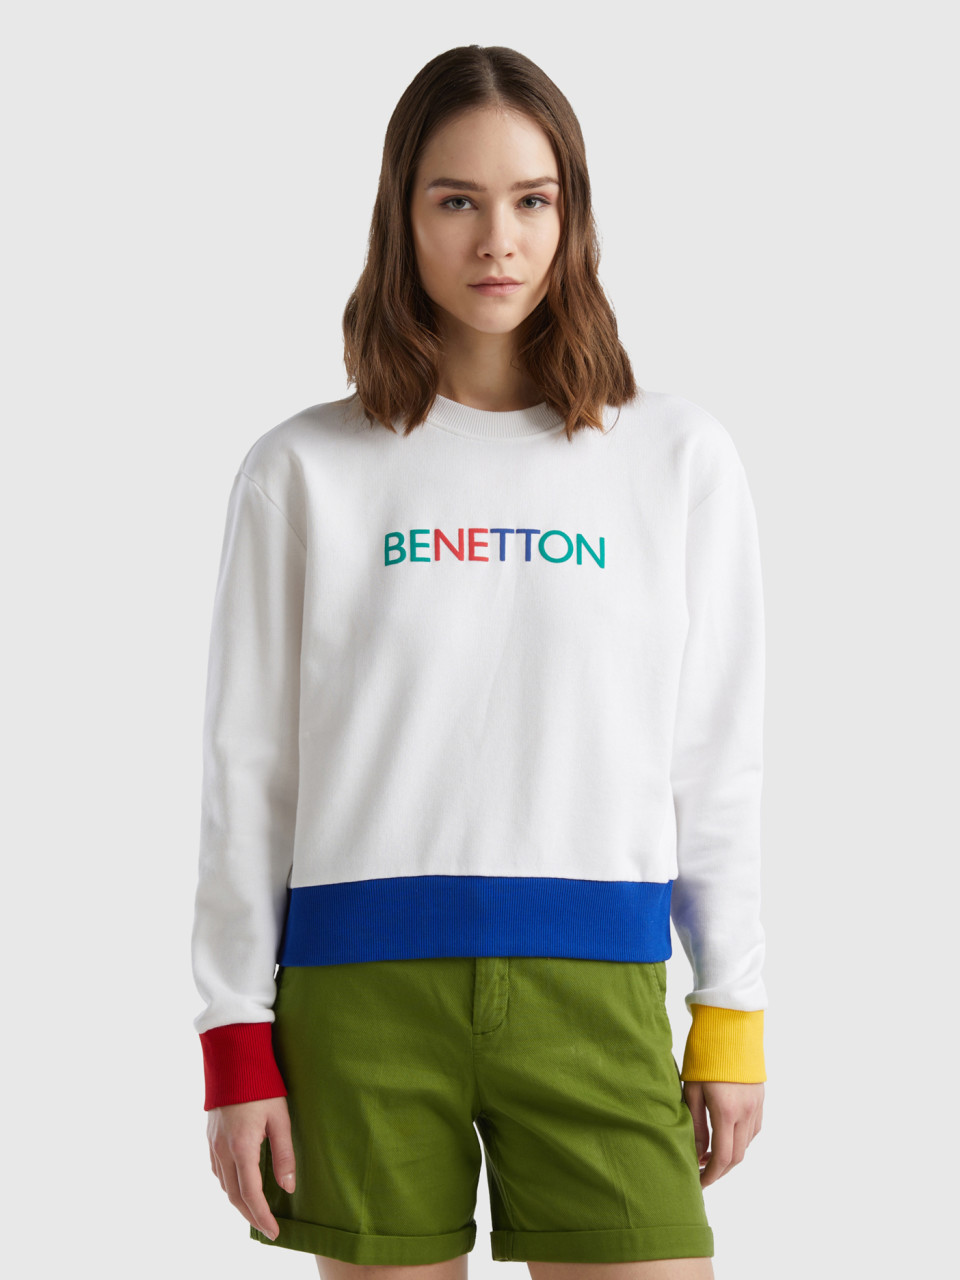 Benetton, Felpa 100% Cotone Con Stampa Logo, Bianco, Donna